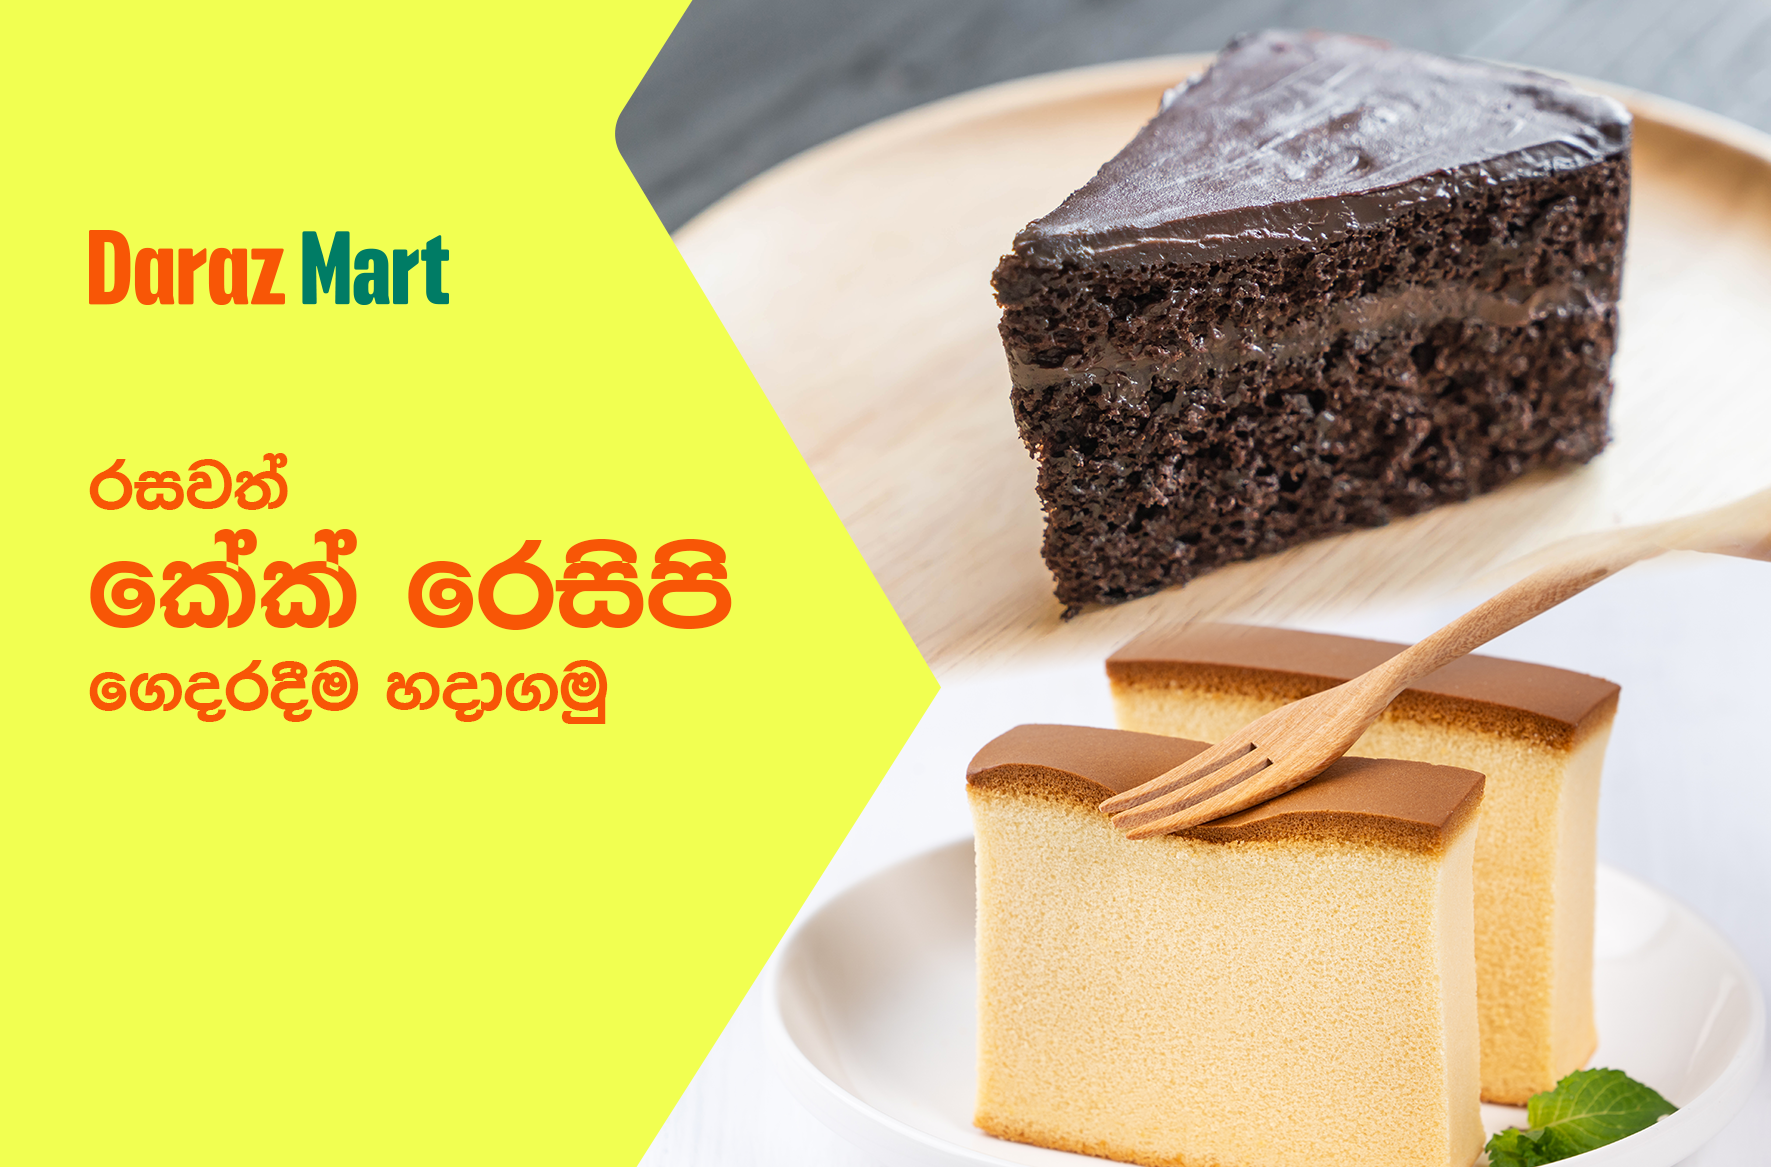 Sri Lankan Christmas cake | SBS Food